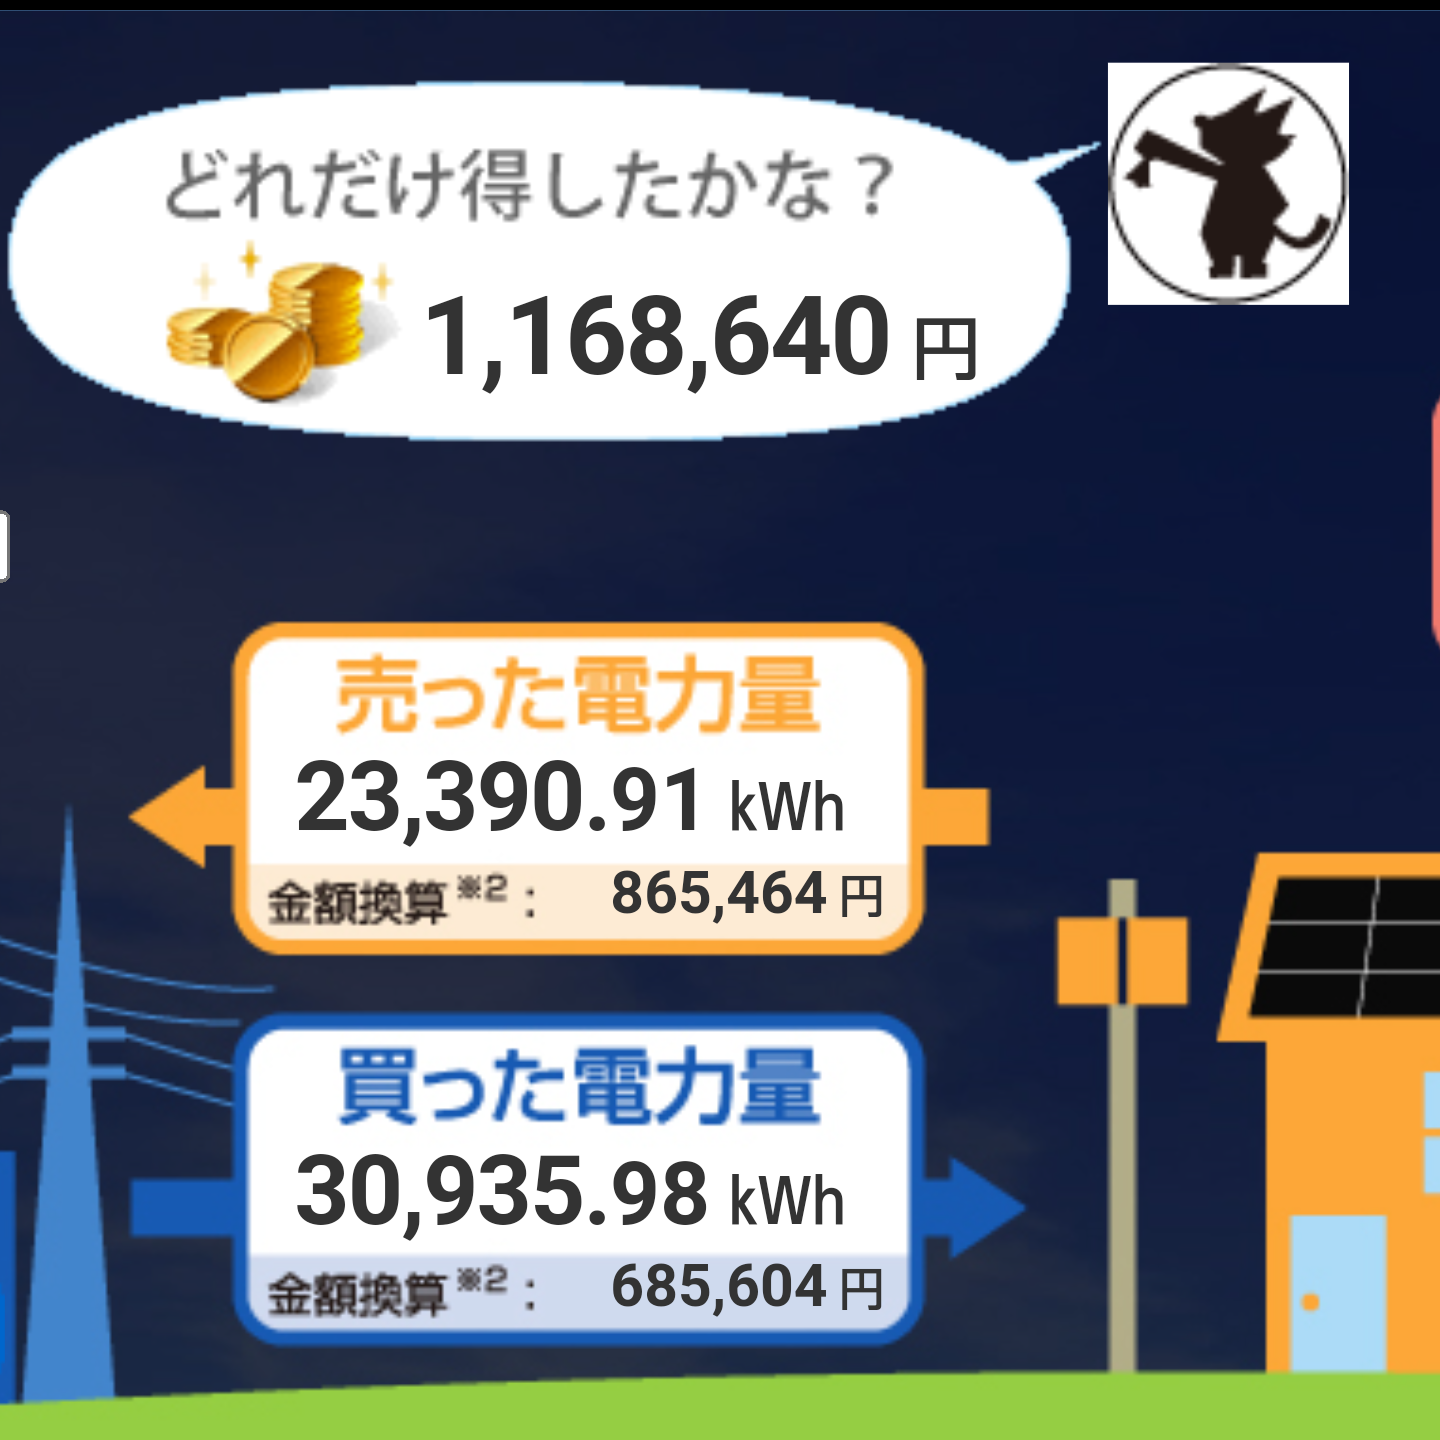 うちは太陽光補助金引いて78万円で設置し...